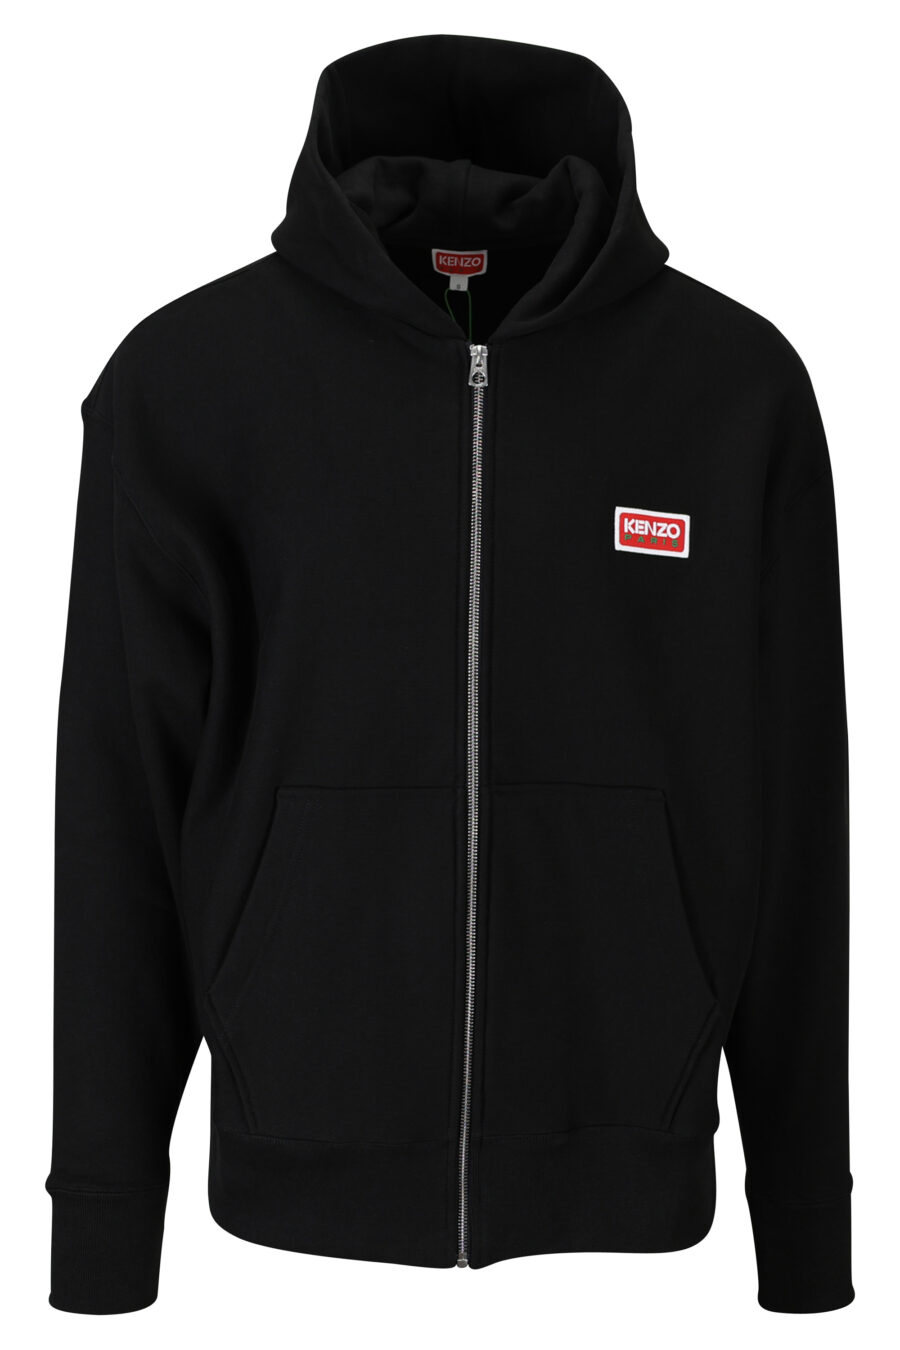 Schwarzes Oversize-Sweatshirt mit Kapuze und Reißverschluss und "kenzo paris"-Logo - 3612230539334